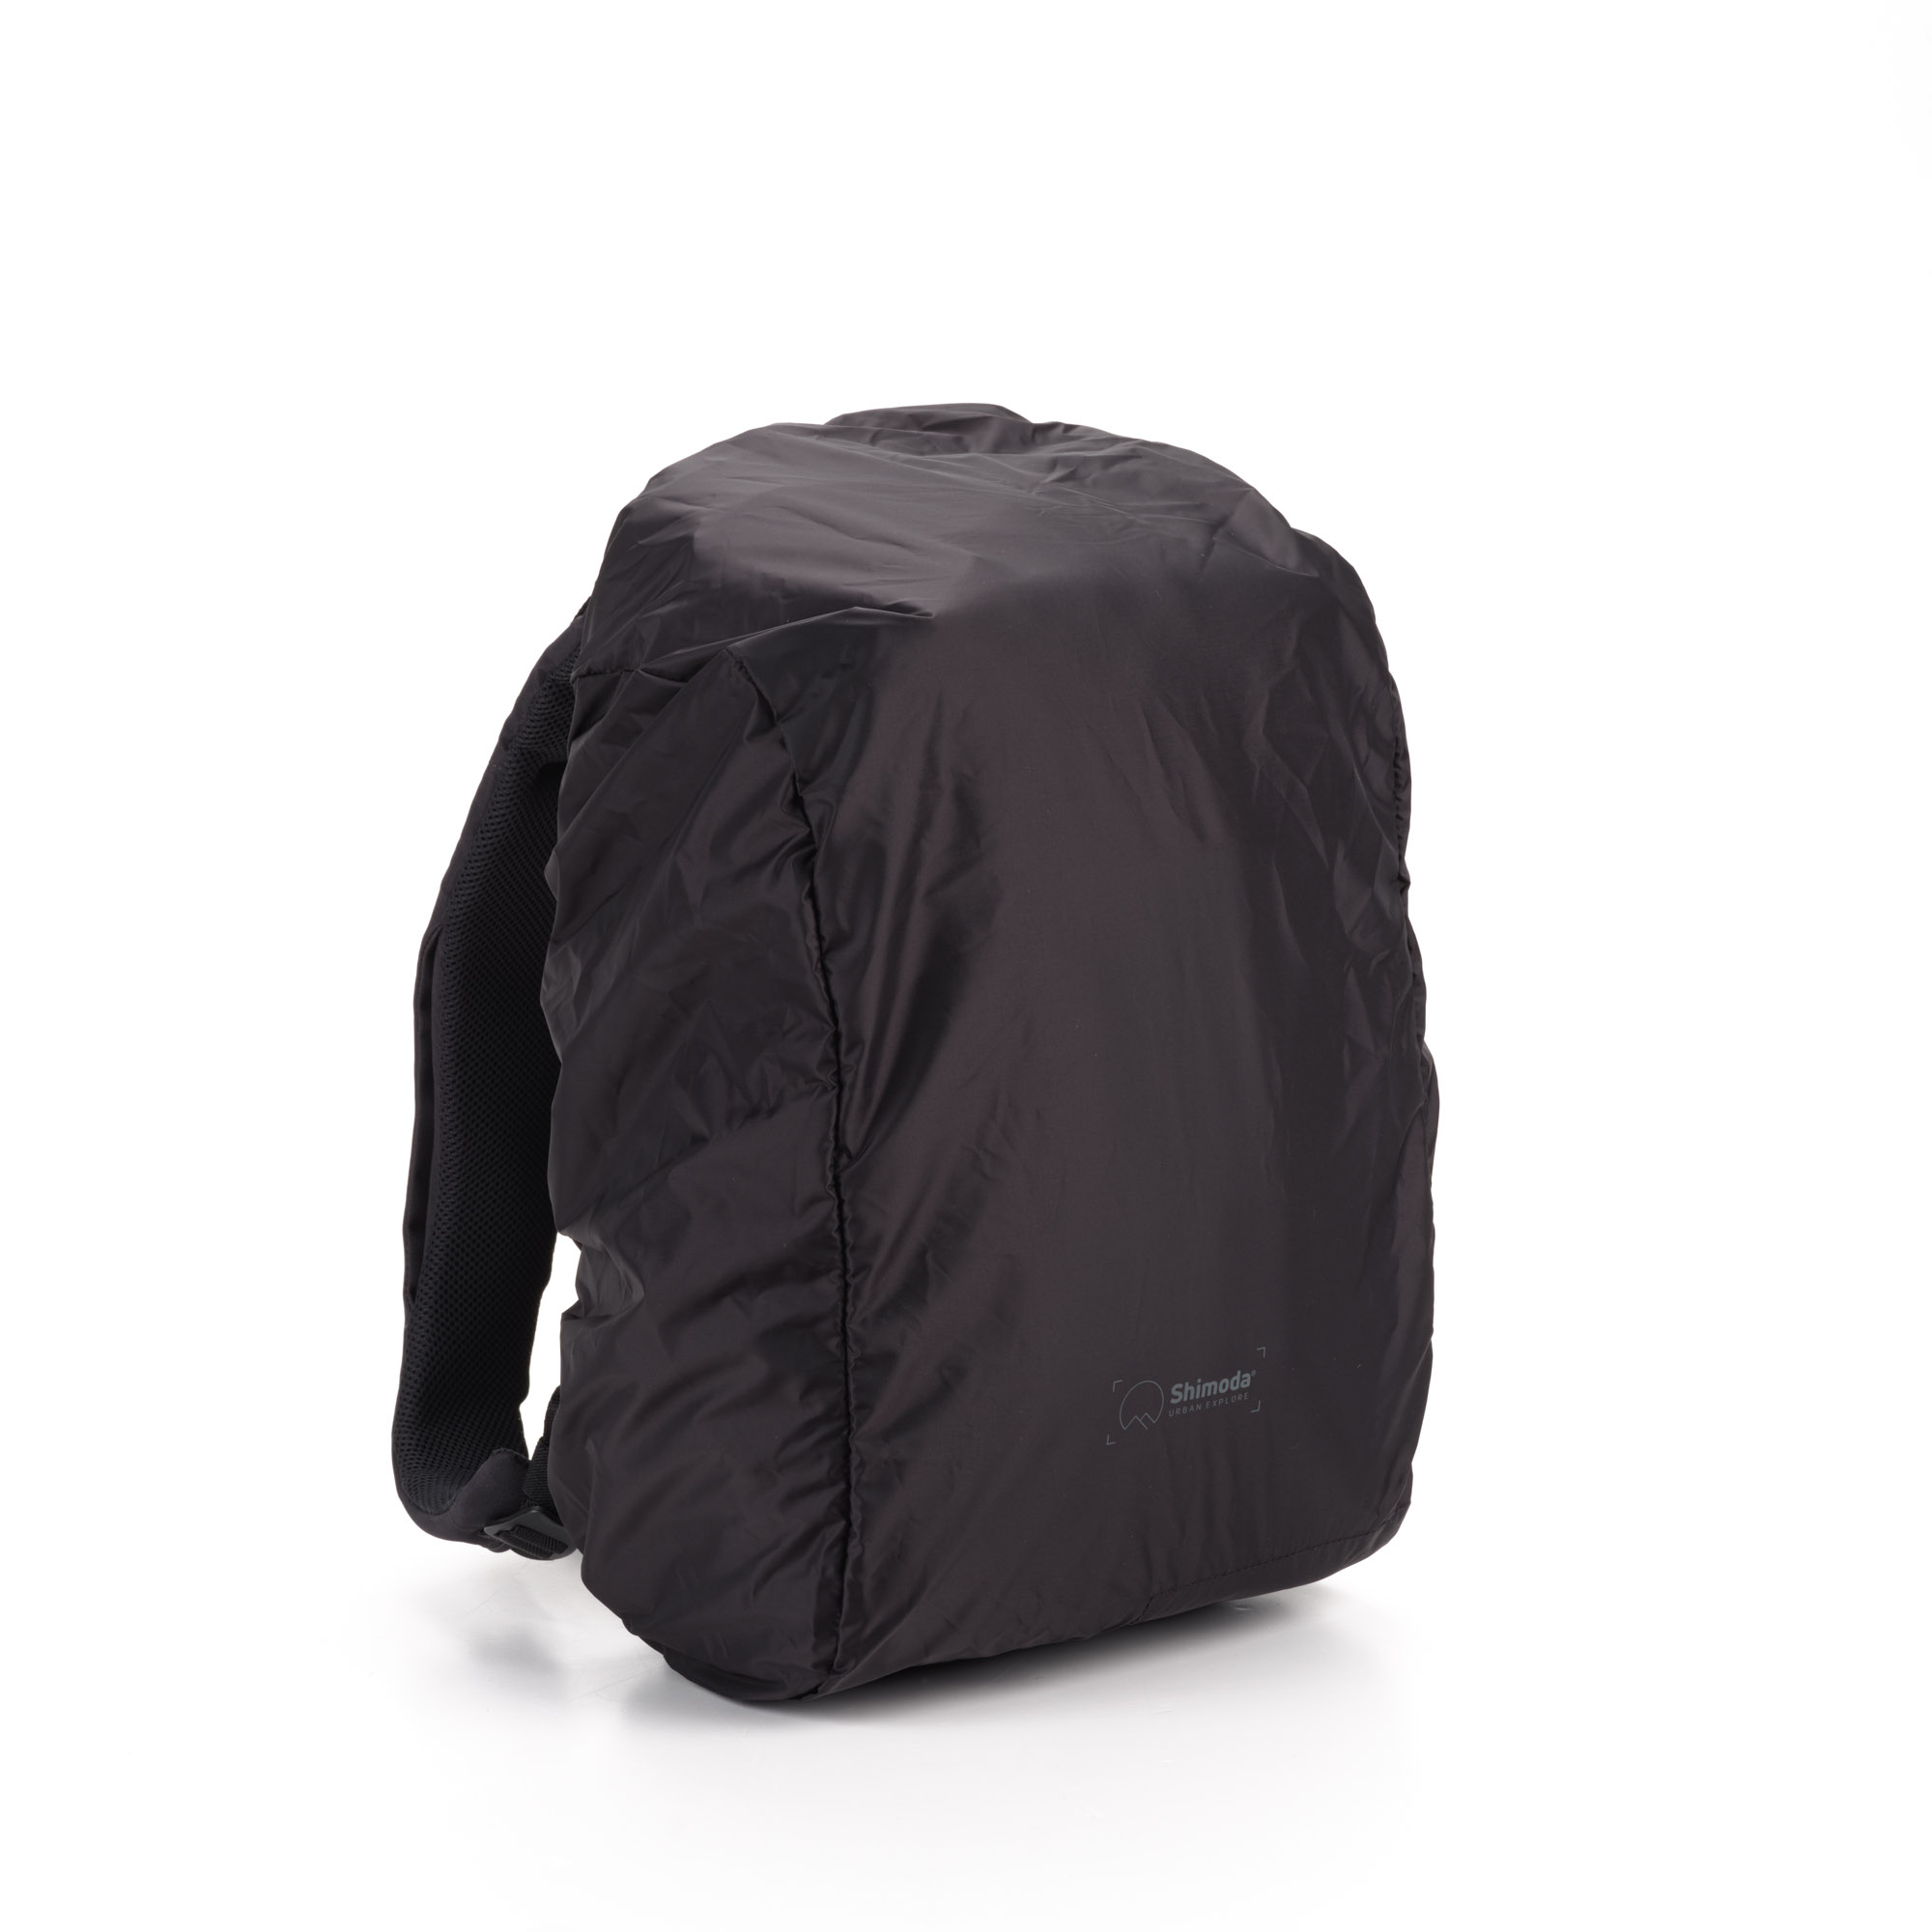 Shimoda Designs Explore 20 Rucksack mit schwarzem Regenschutz